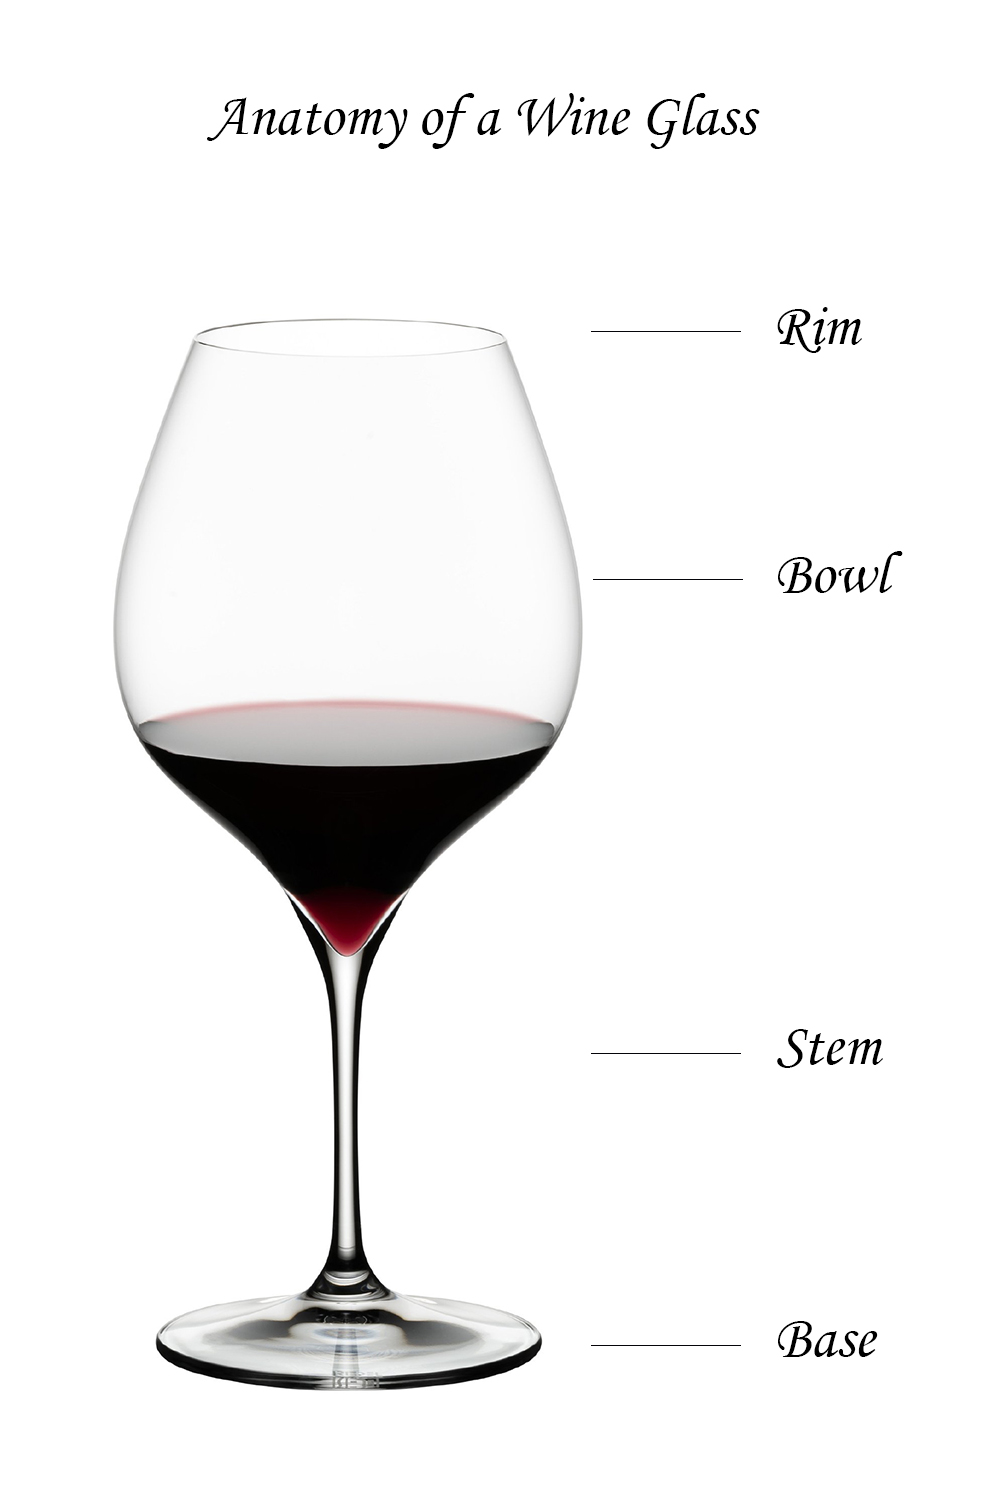 Wine glass with stem